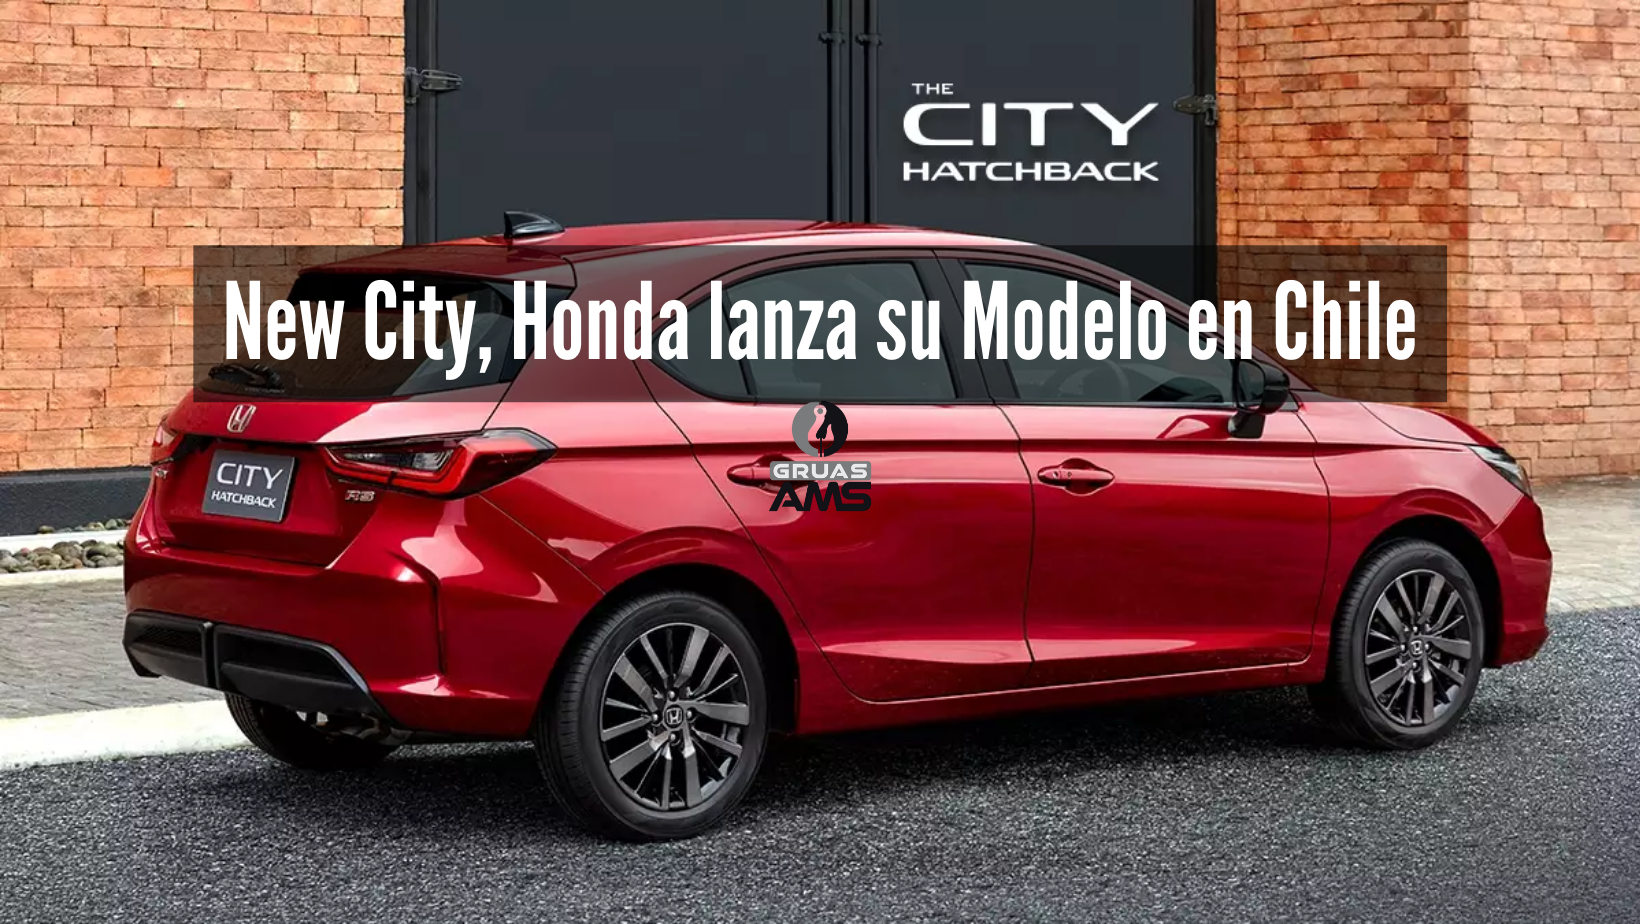 New City, Honda lanza su Modelo en Chile